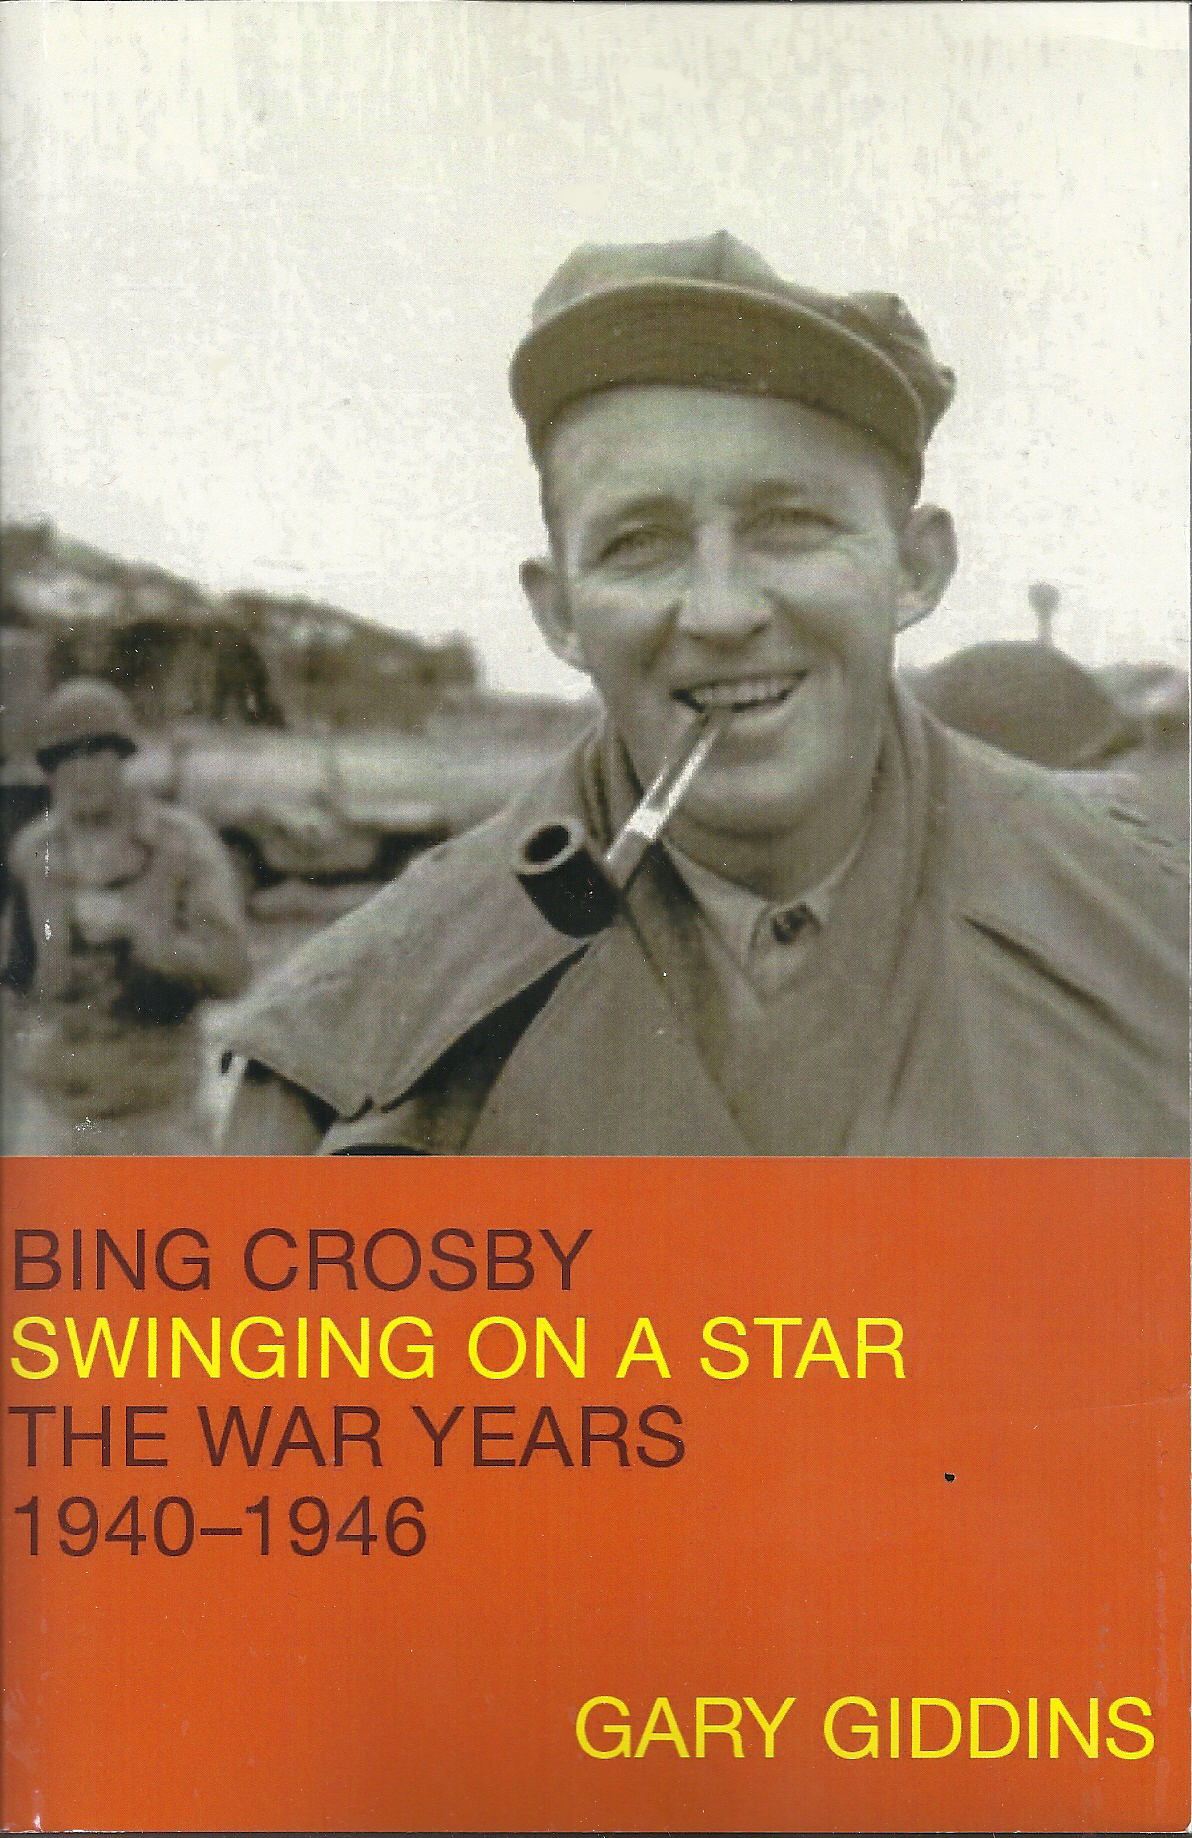 Books about Bing Crosby -- Bing Crosby Internet Museum -- www.stevenlewis.info